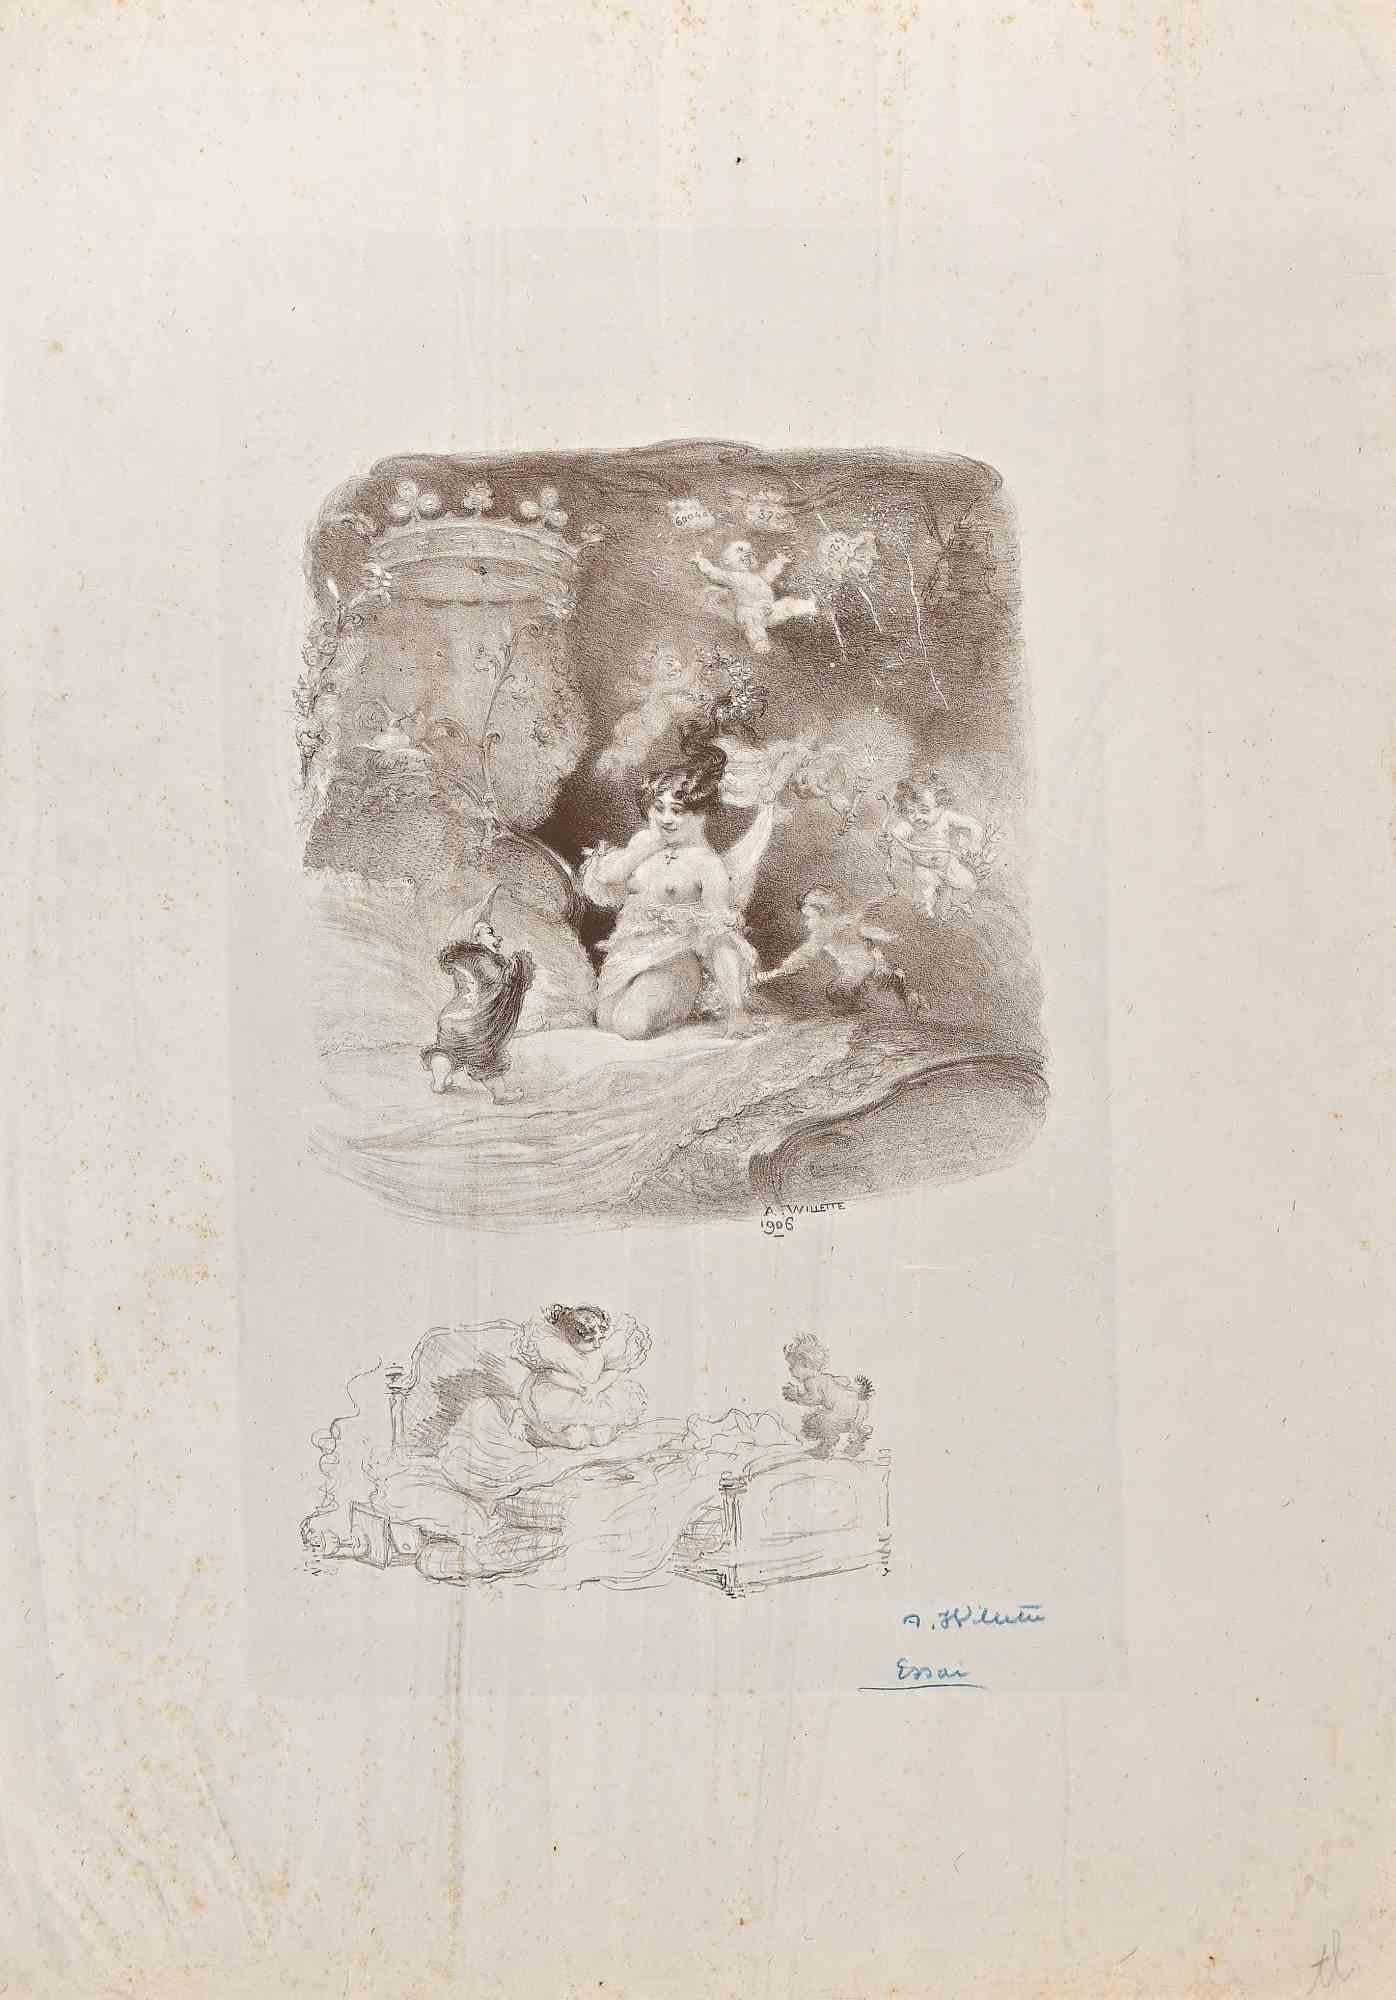 Dame mit Amoretten und Zwerg ist eine Lithographie aus dem Jahr 1906 von Willette (Adolphe Léon).

Handsigniert mit Bleistift in der rechten unteren Ecke.

Guter Zustand mit Falten und verbrauchten Rändern.

Adolphe Léon Willette (30. Juli 1857,